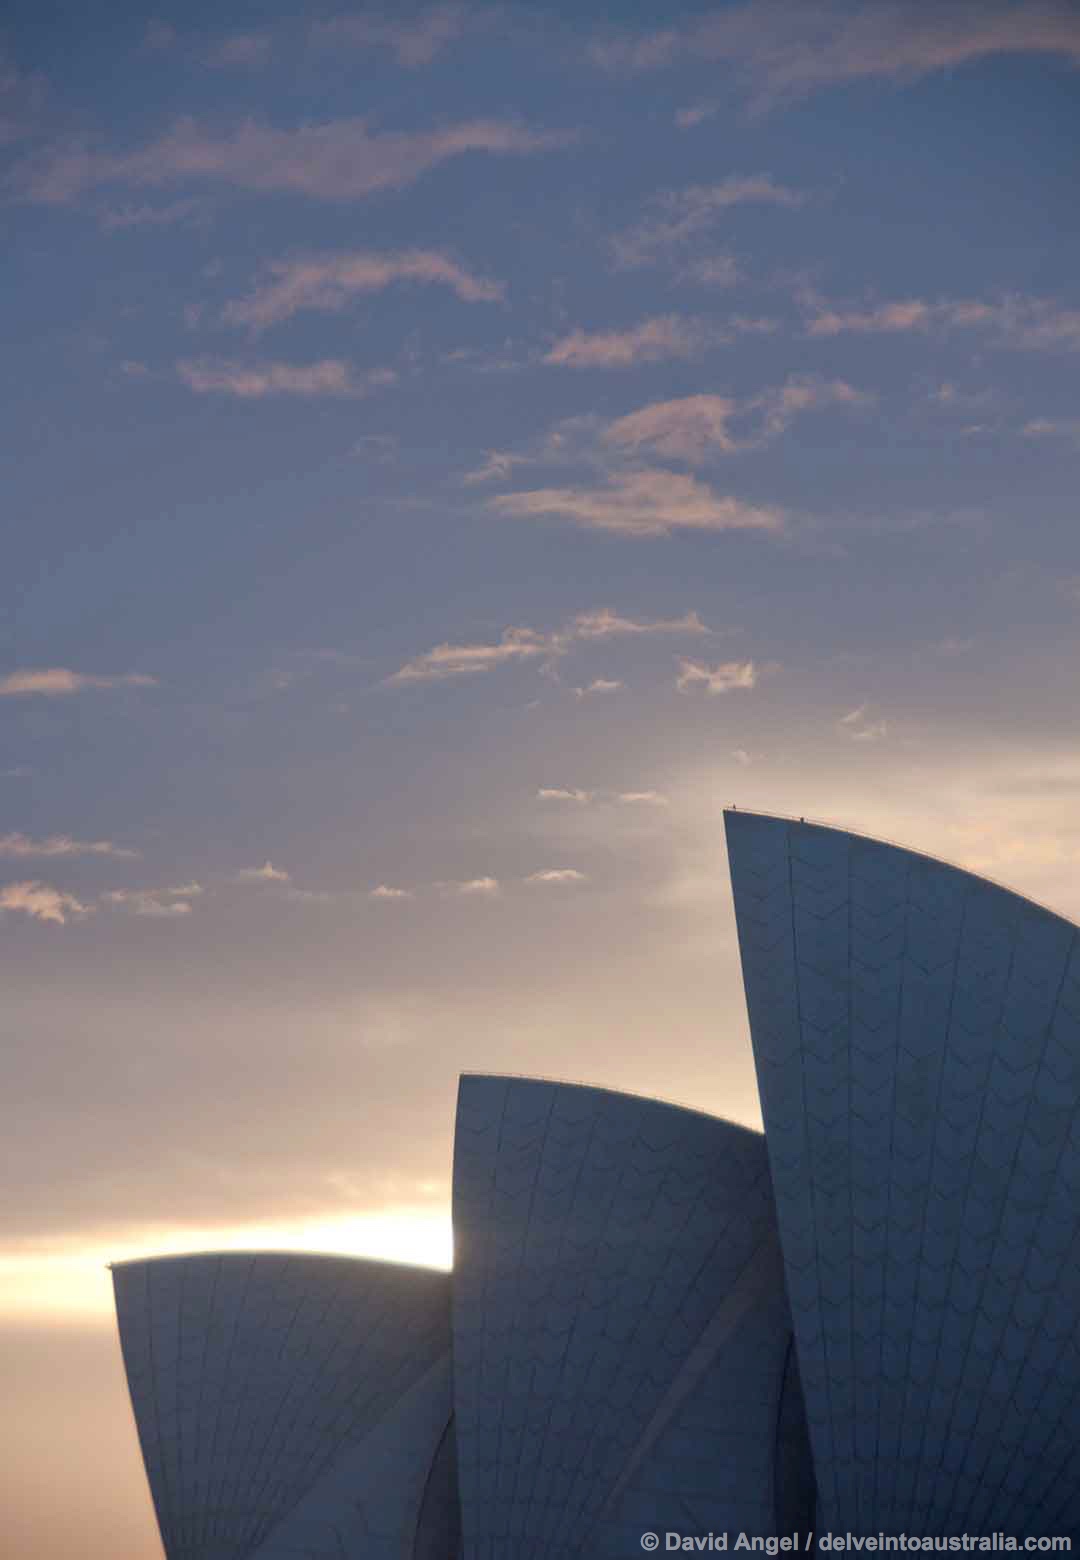 Image of Sydney Opera House at sunrise